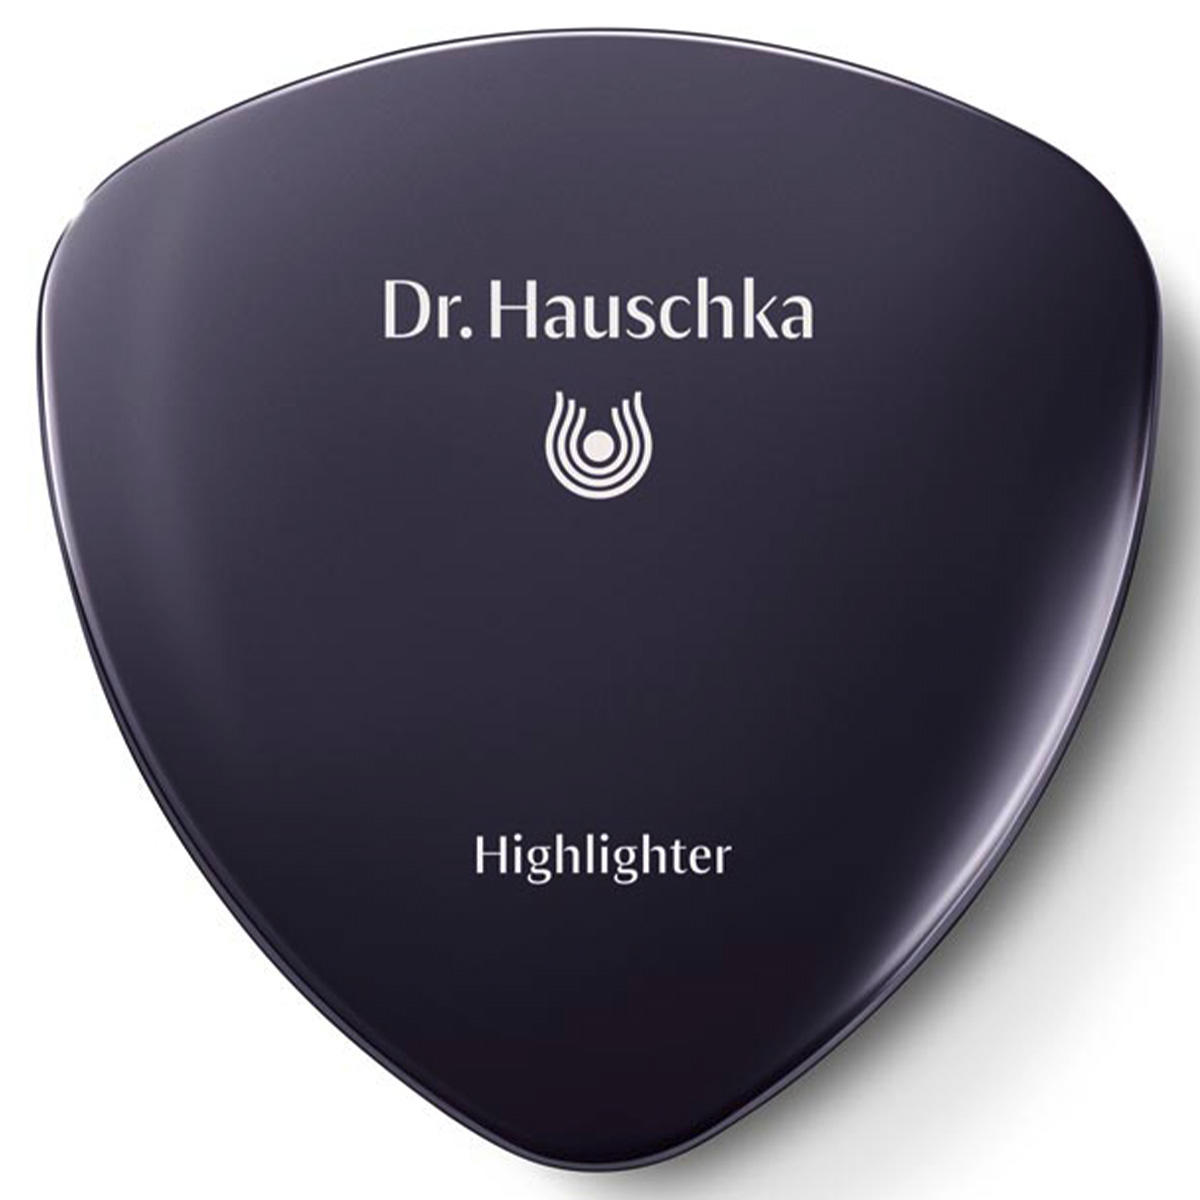 Dr. Hauschka Highlighter 01 illuminating 5 g - 2